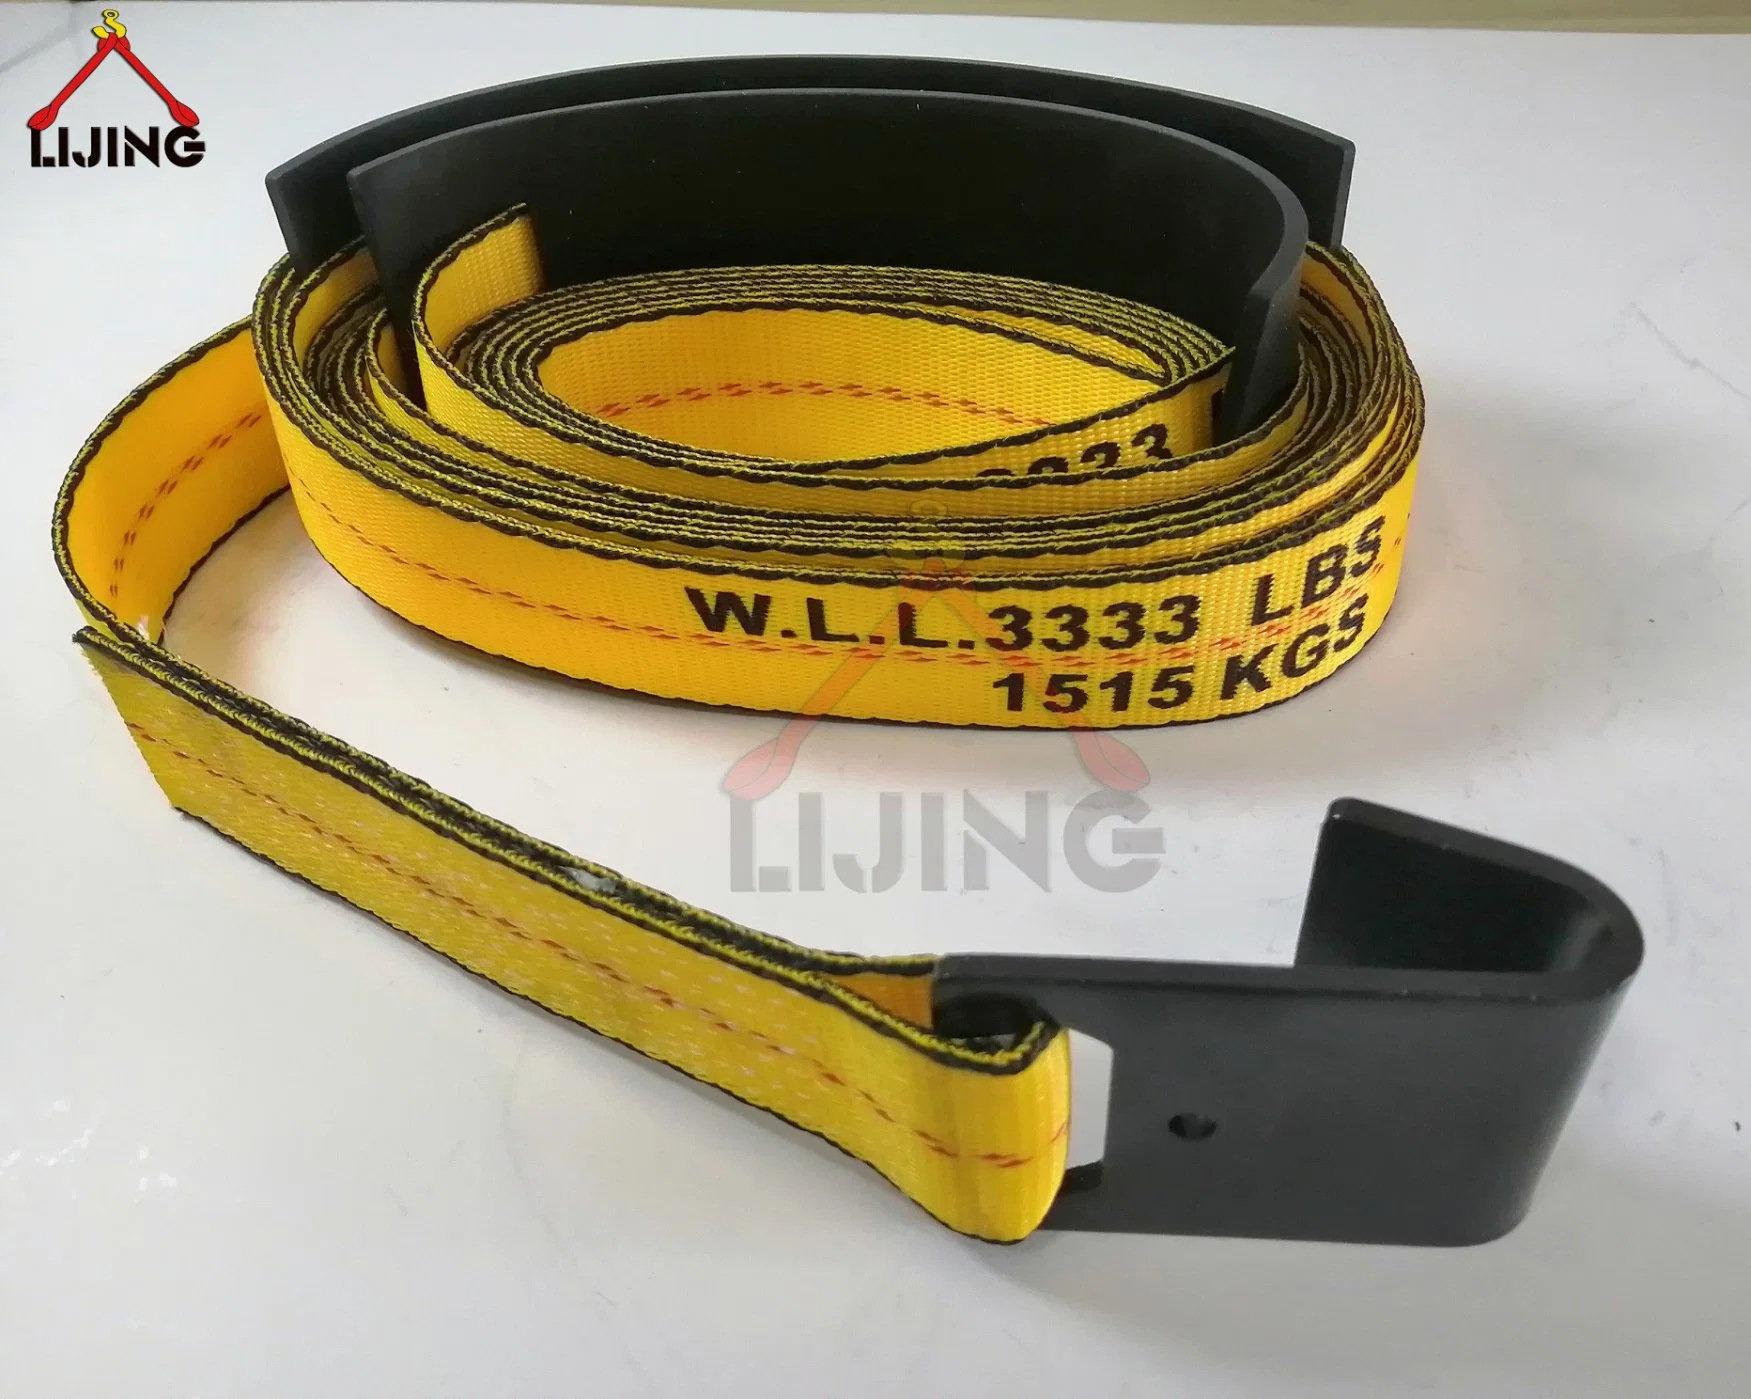 2" X 27" amarillo la brida de trinquete W/ Protección de plástico negro gancho plana